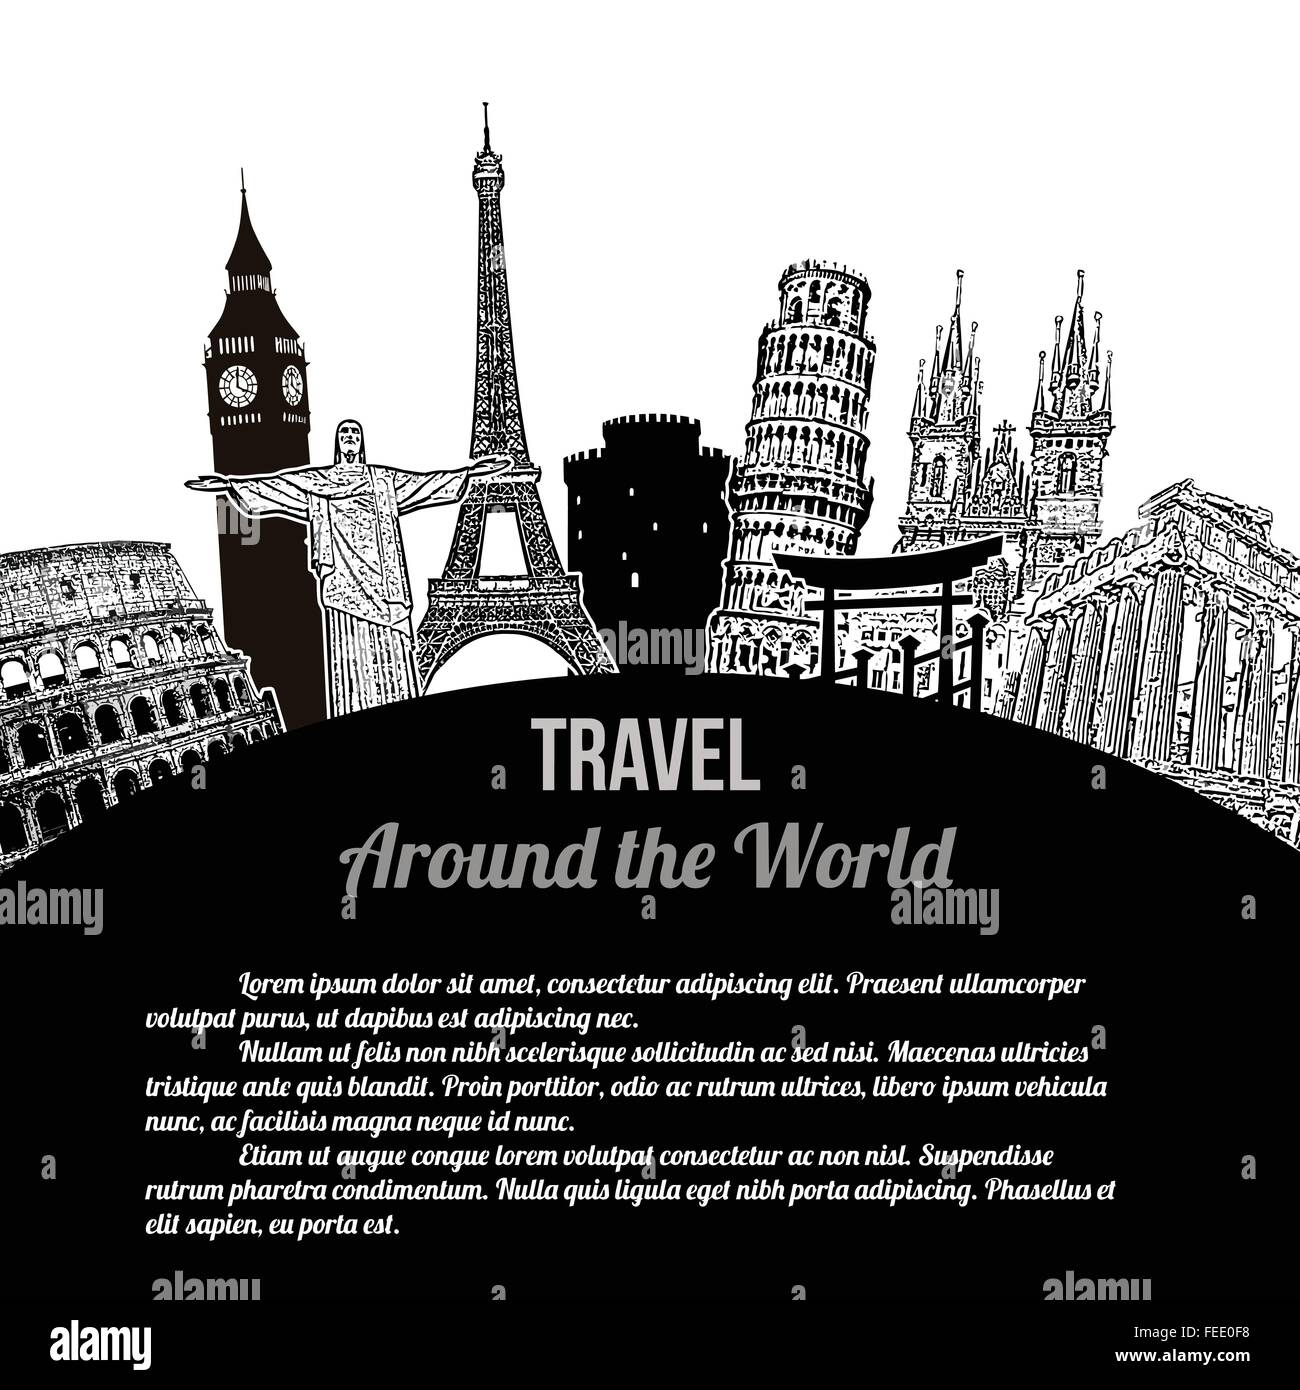 Voyage autour du monde,affiche touristique sur fond blanc avec l'espace pour votre texte, vector illustration Illustration de Vecteur